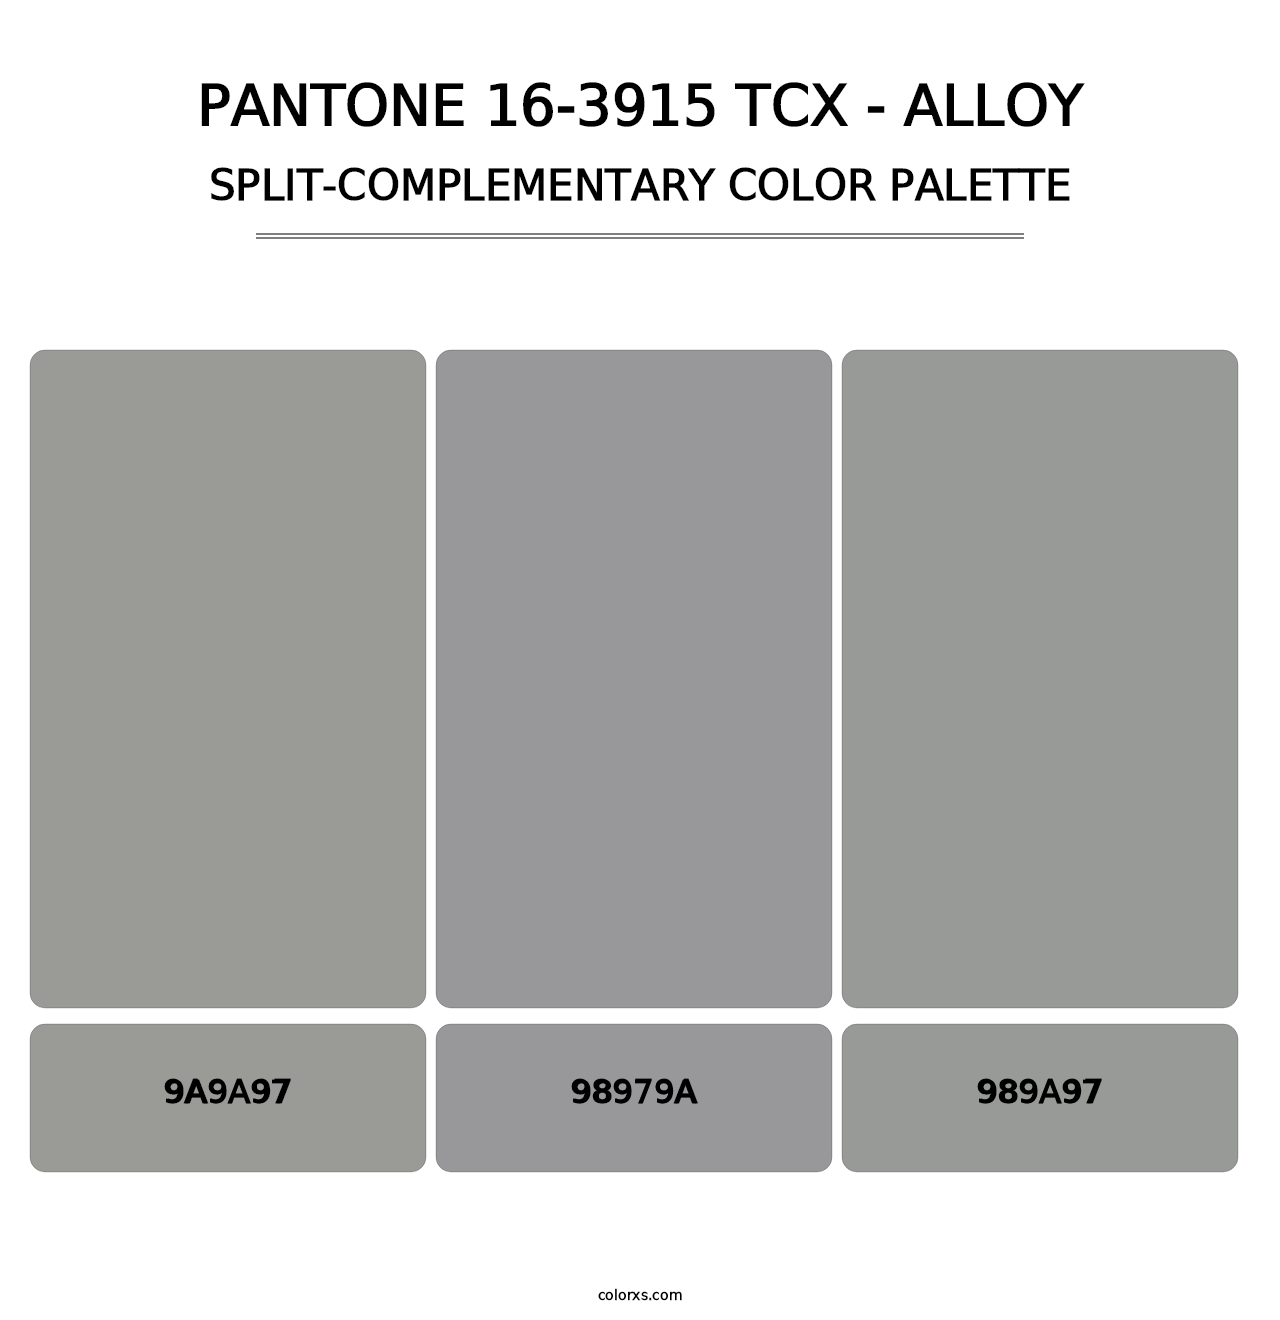 PANTONE 16-3915 TCX - Alloy - Split-Complementary Color Palette